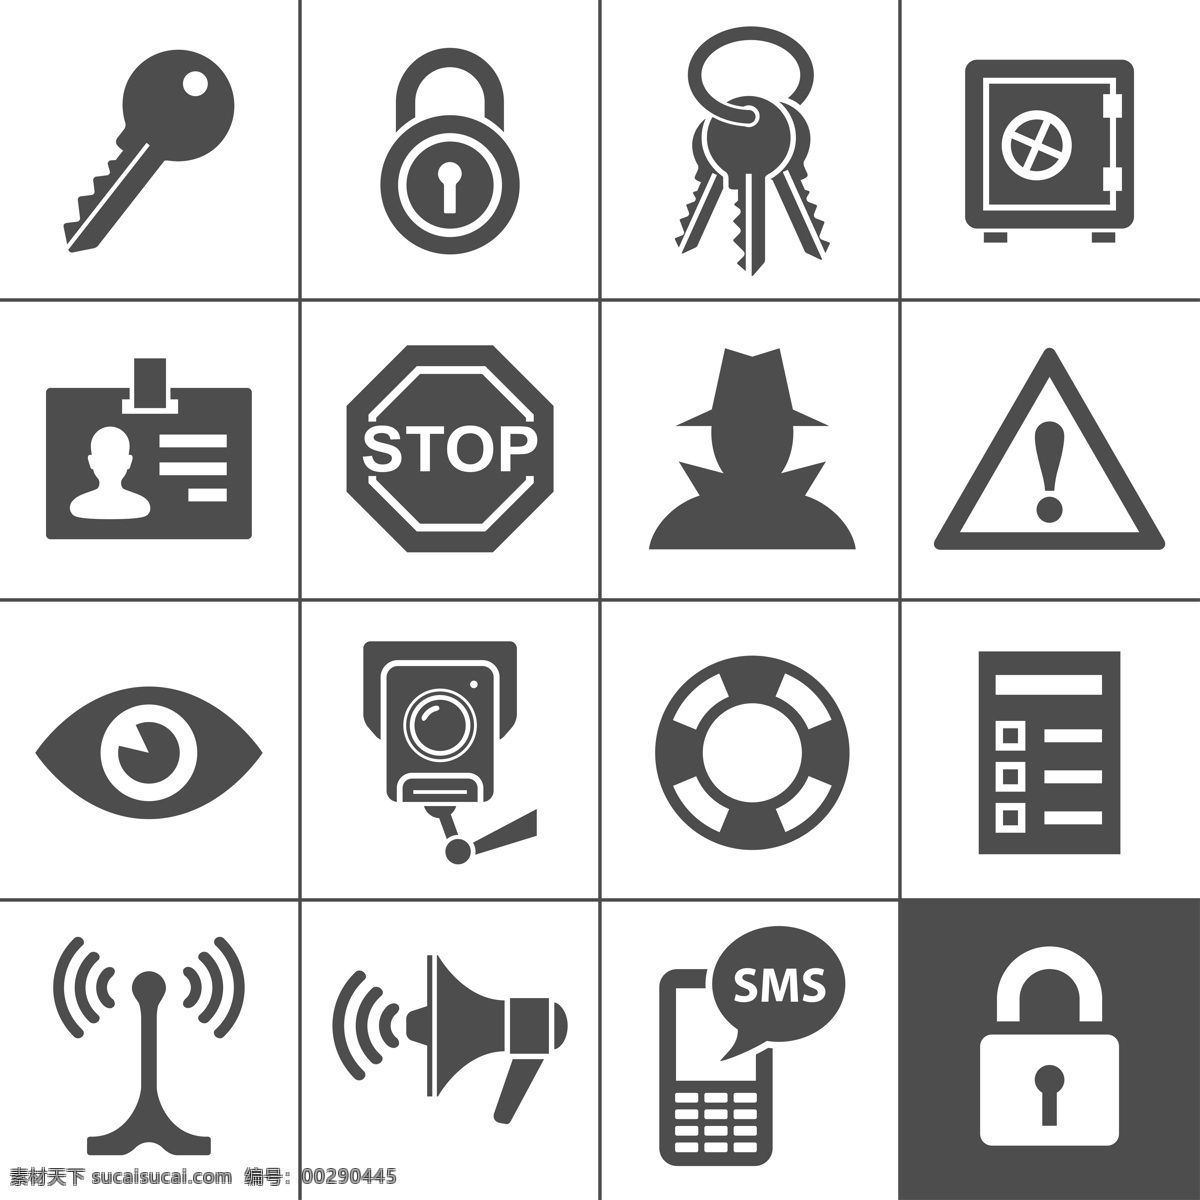 网络安全 图标 按钮 网络安全图标 信息图标 手机 密保 密码 app图标 应用程序图标 按钮图标 其他类别 生活百科 白色